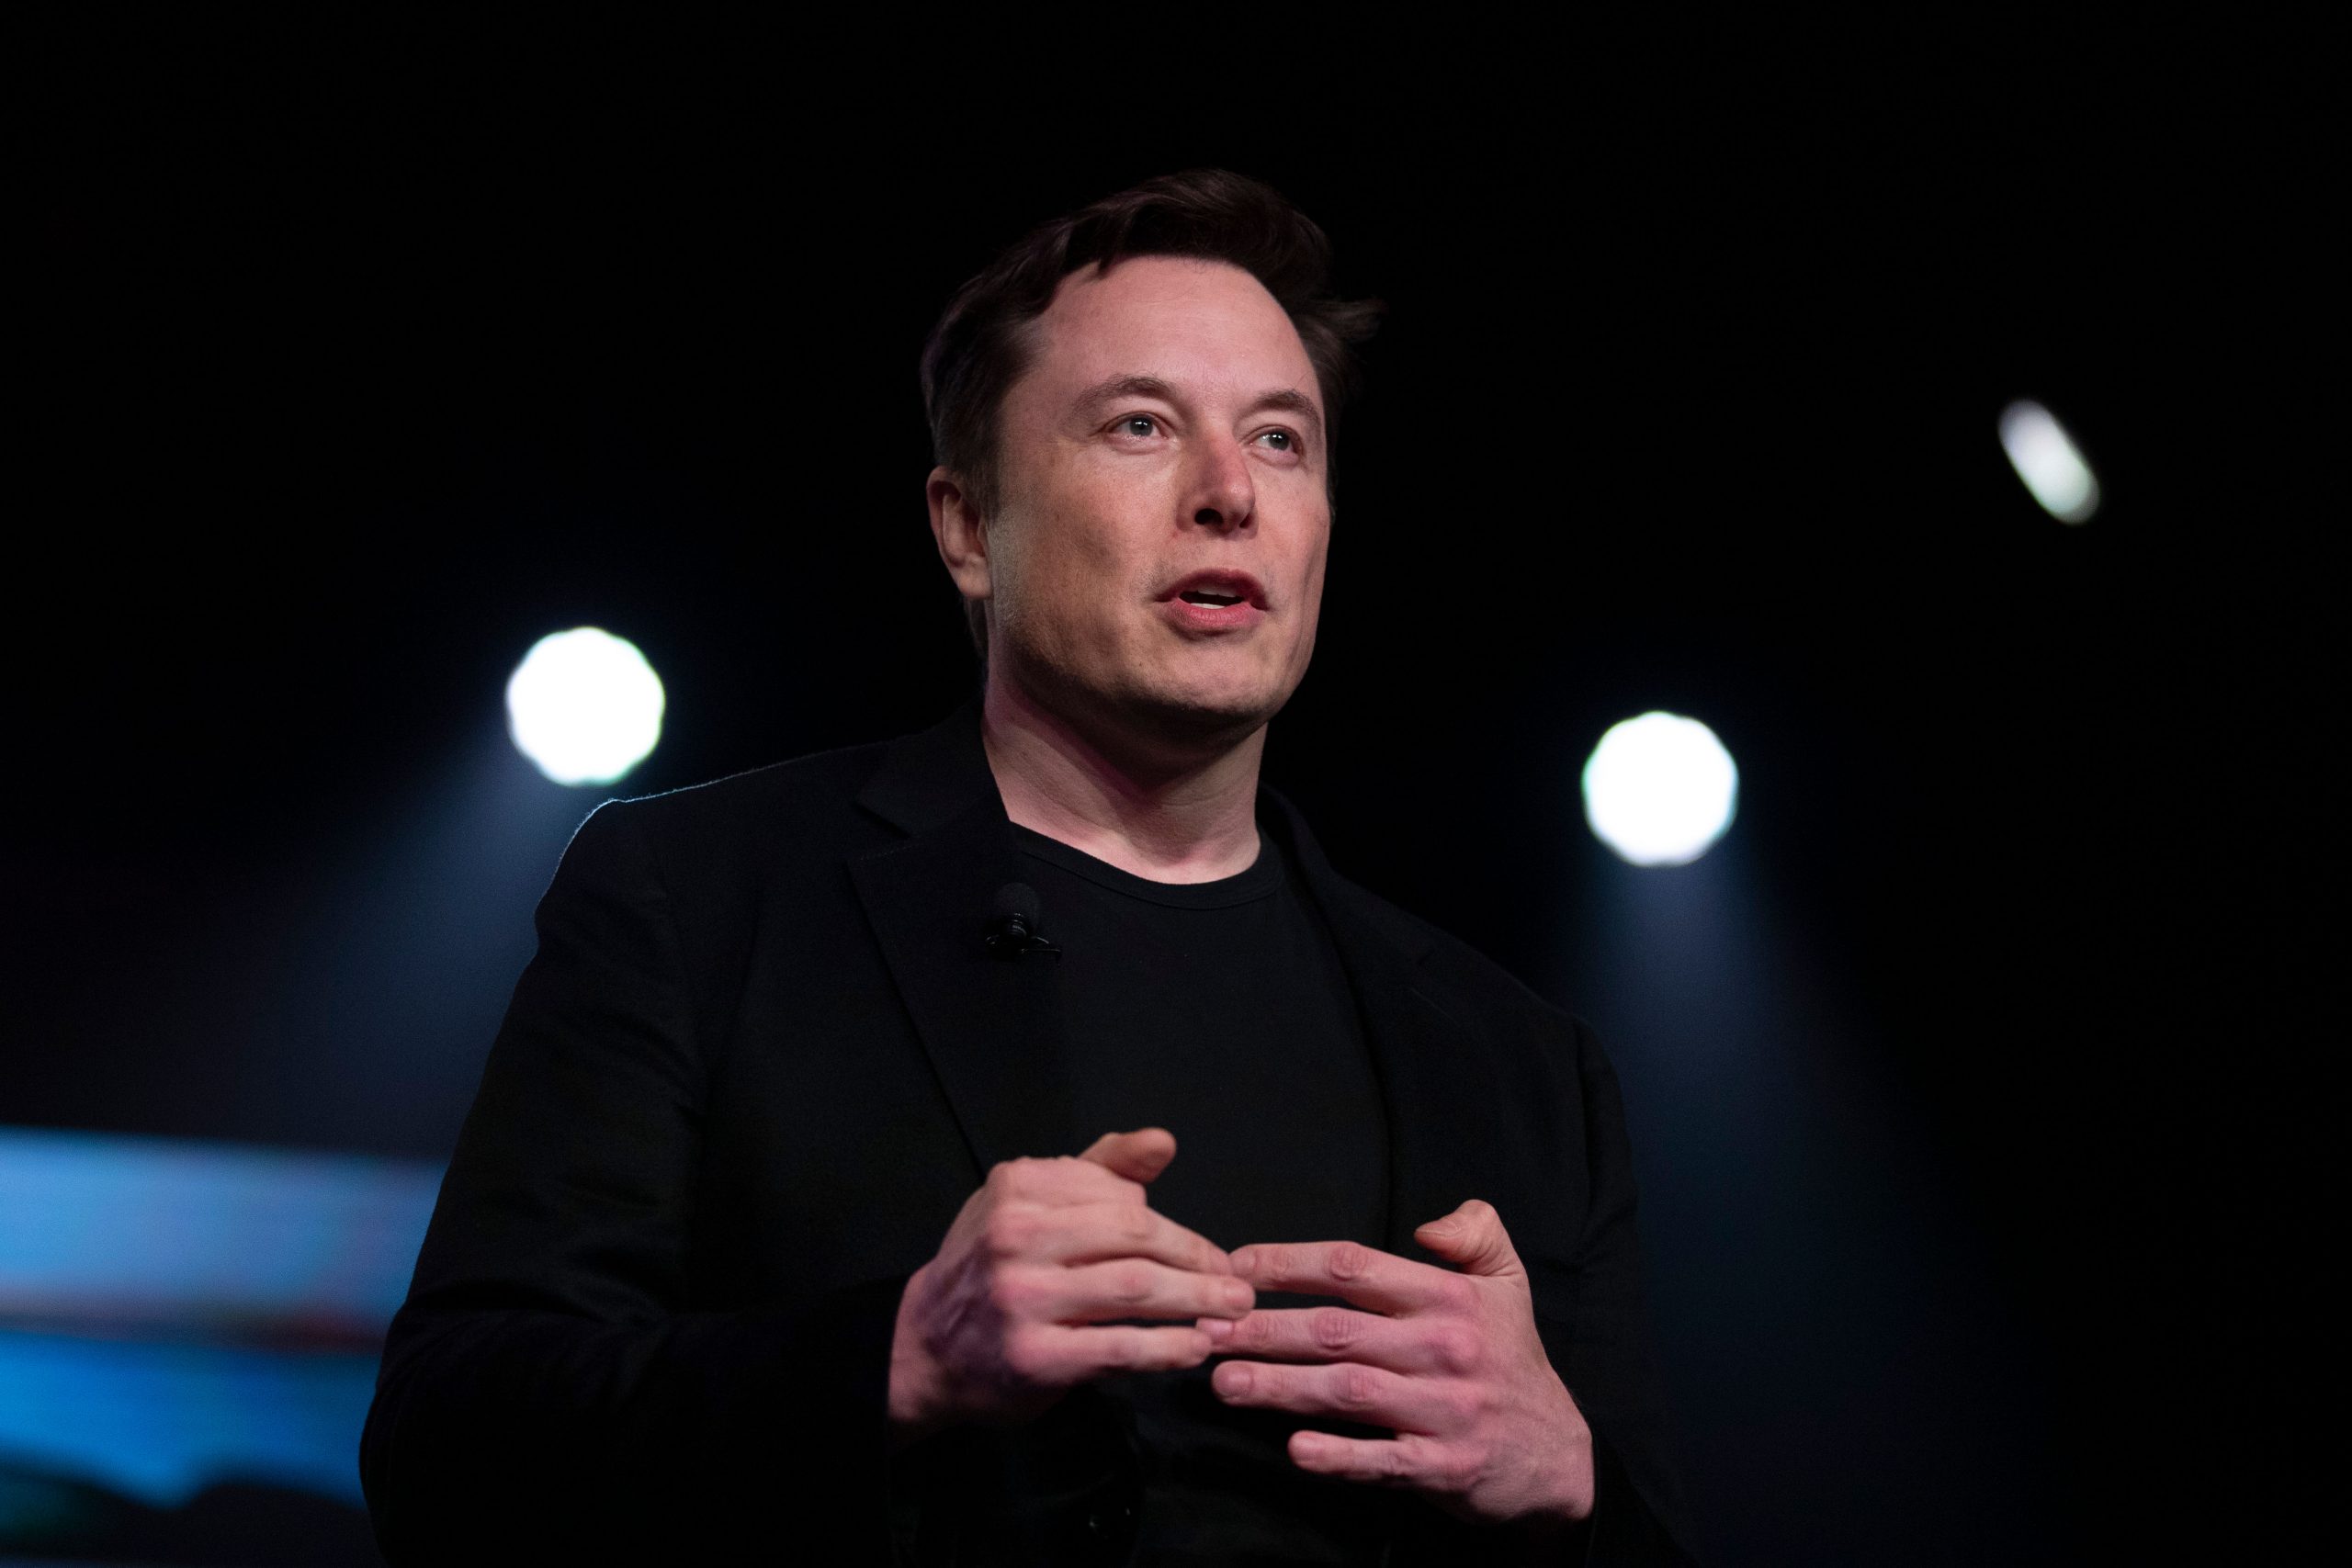 Elon Musk quotes Eminem against SEC demand that Tesla lawyers vet tweets